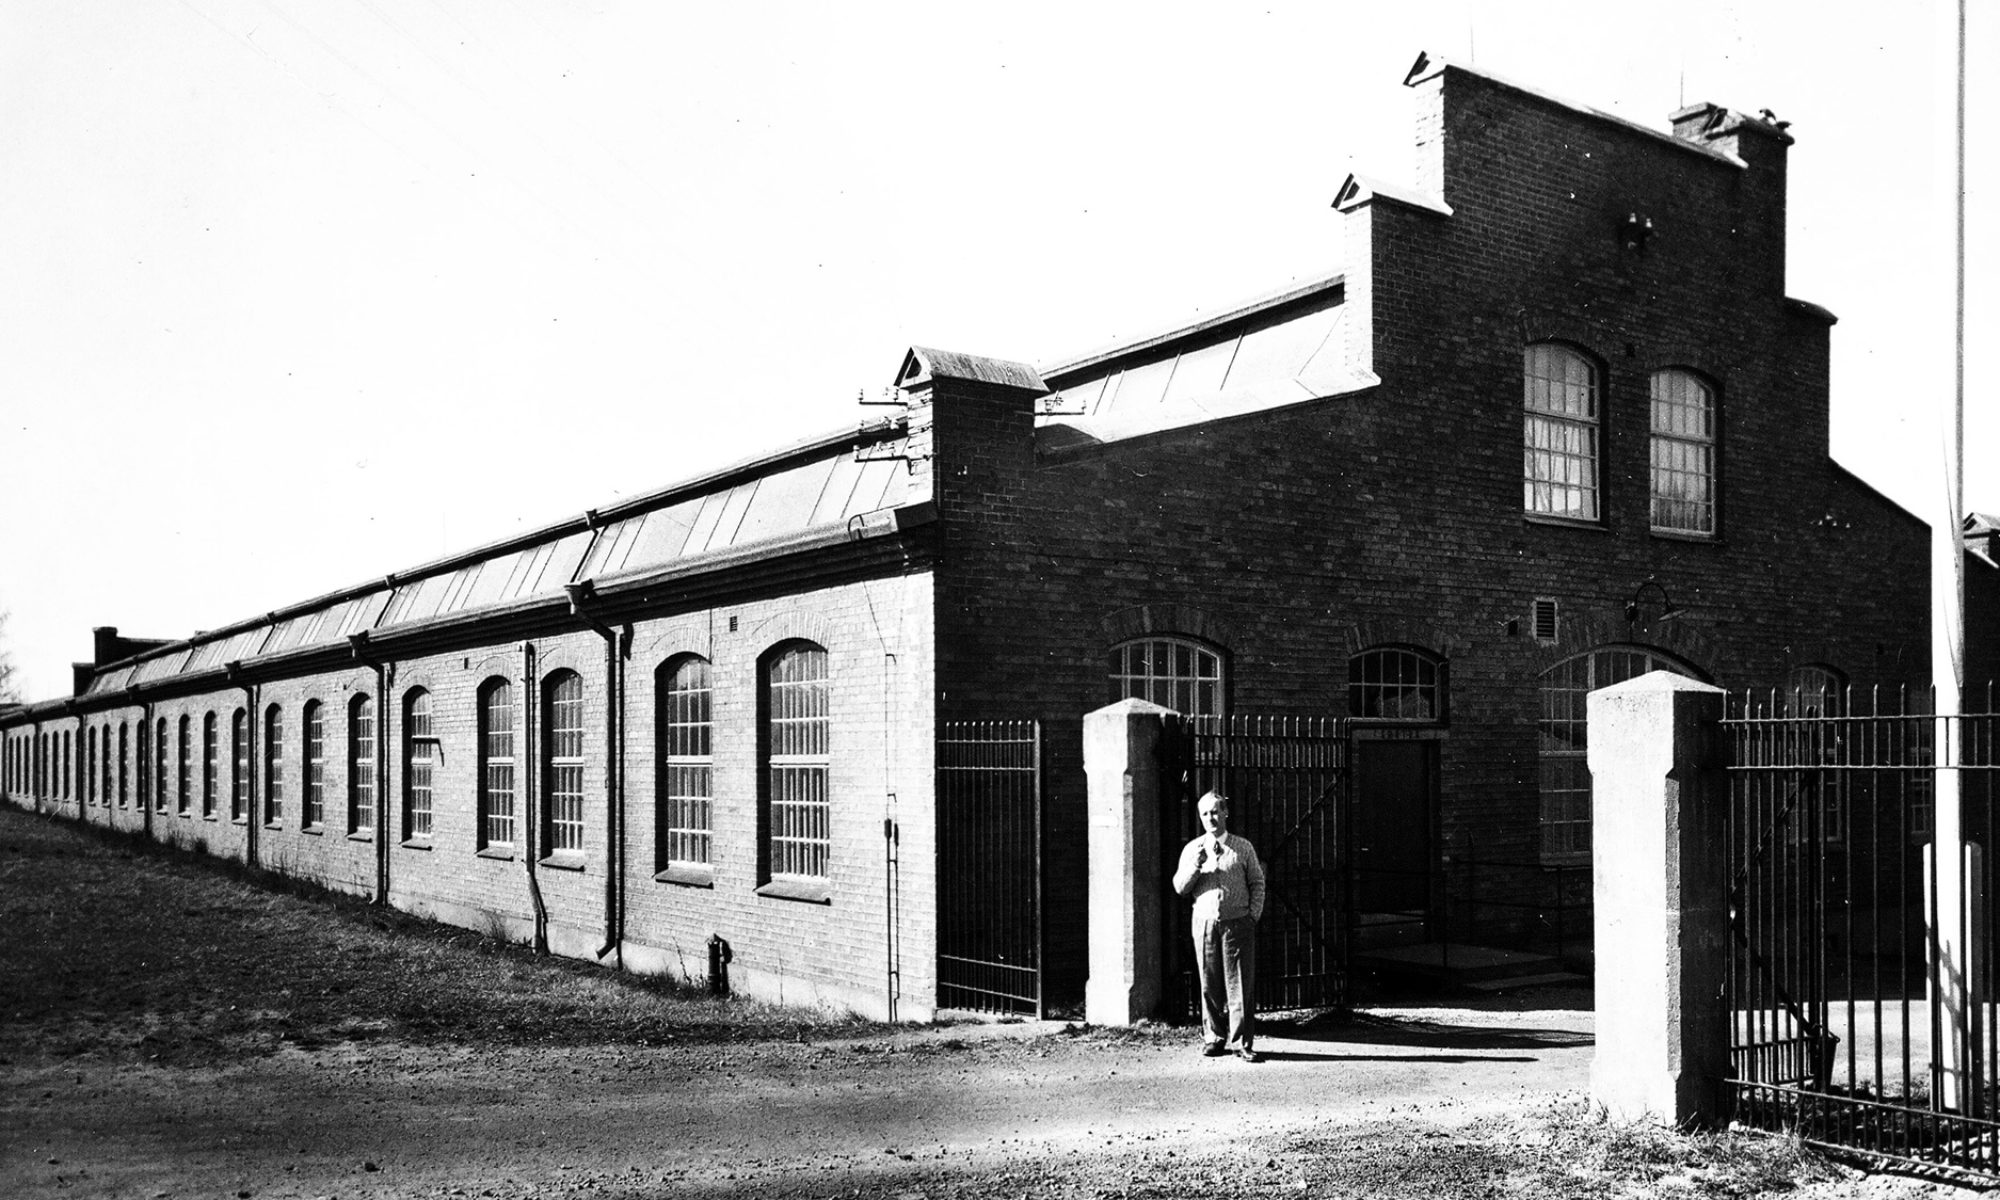 En svartvit bild av en äldre fabrik. En man står framför byggnaden.